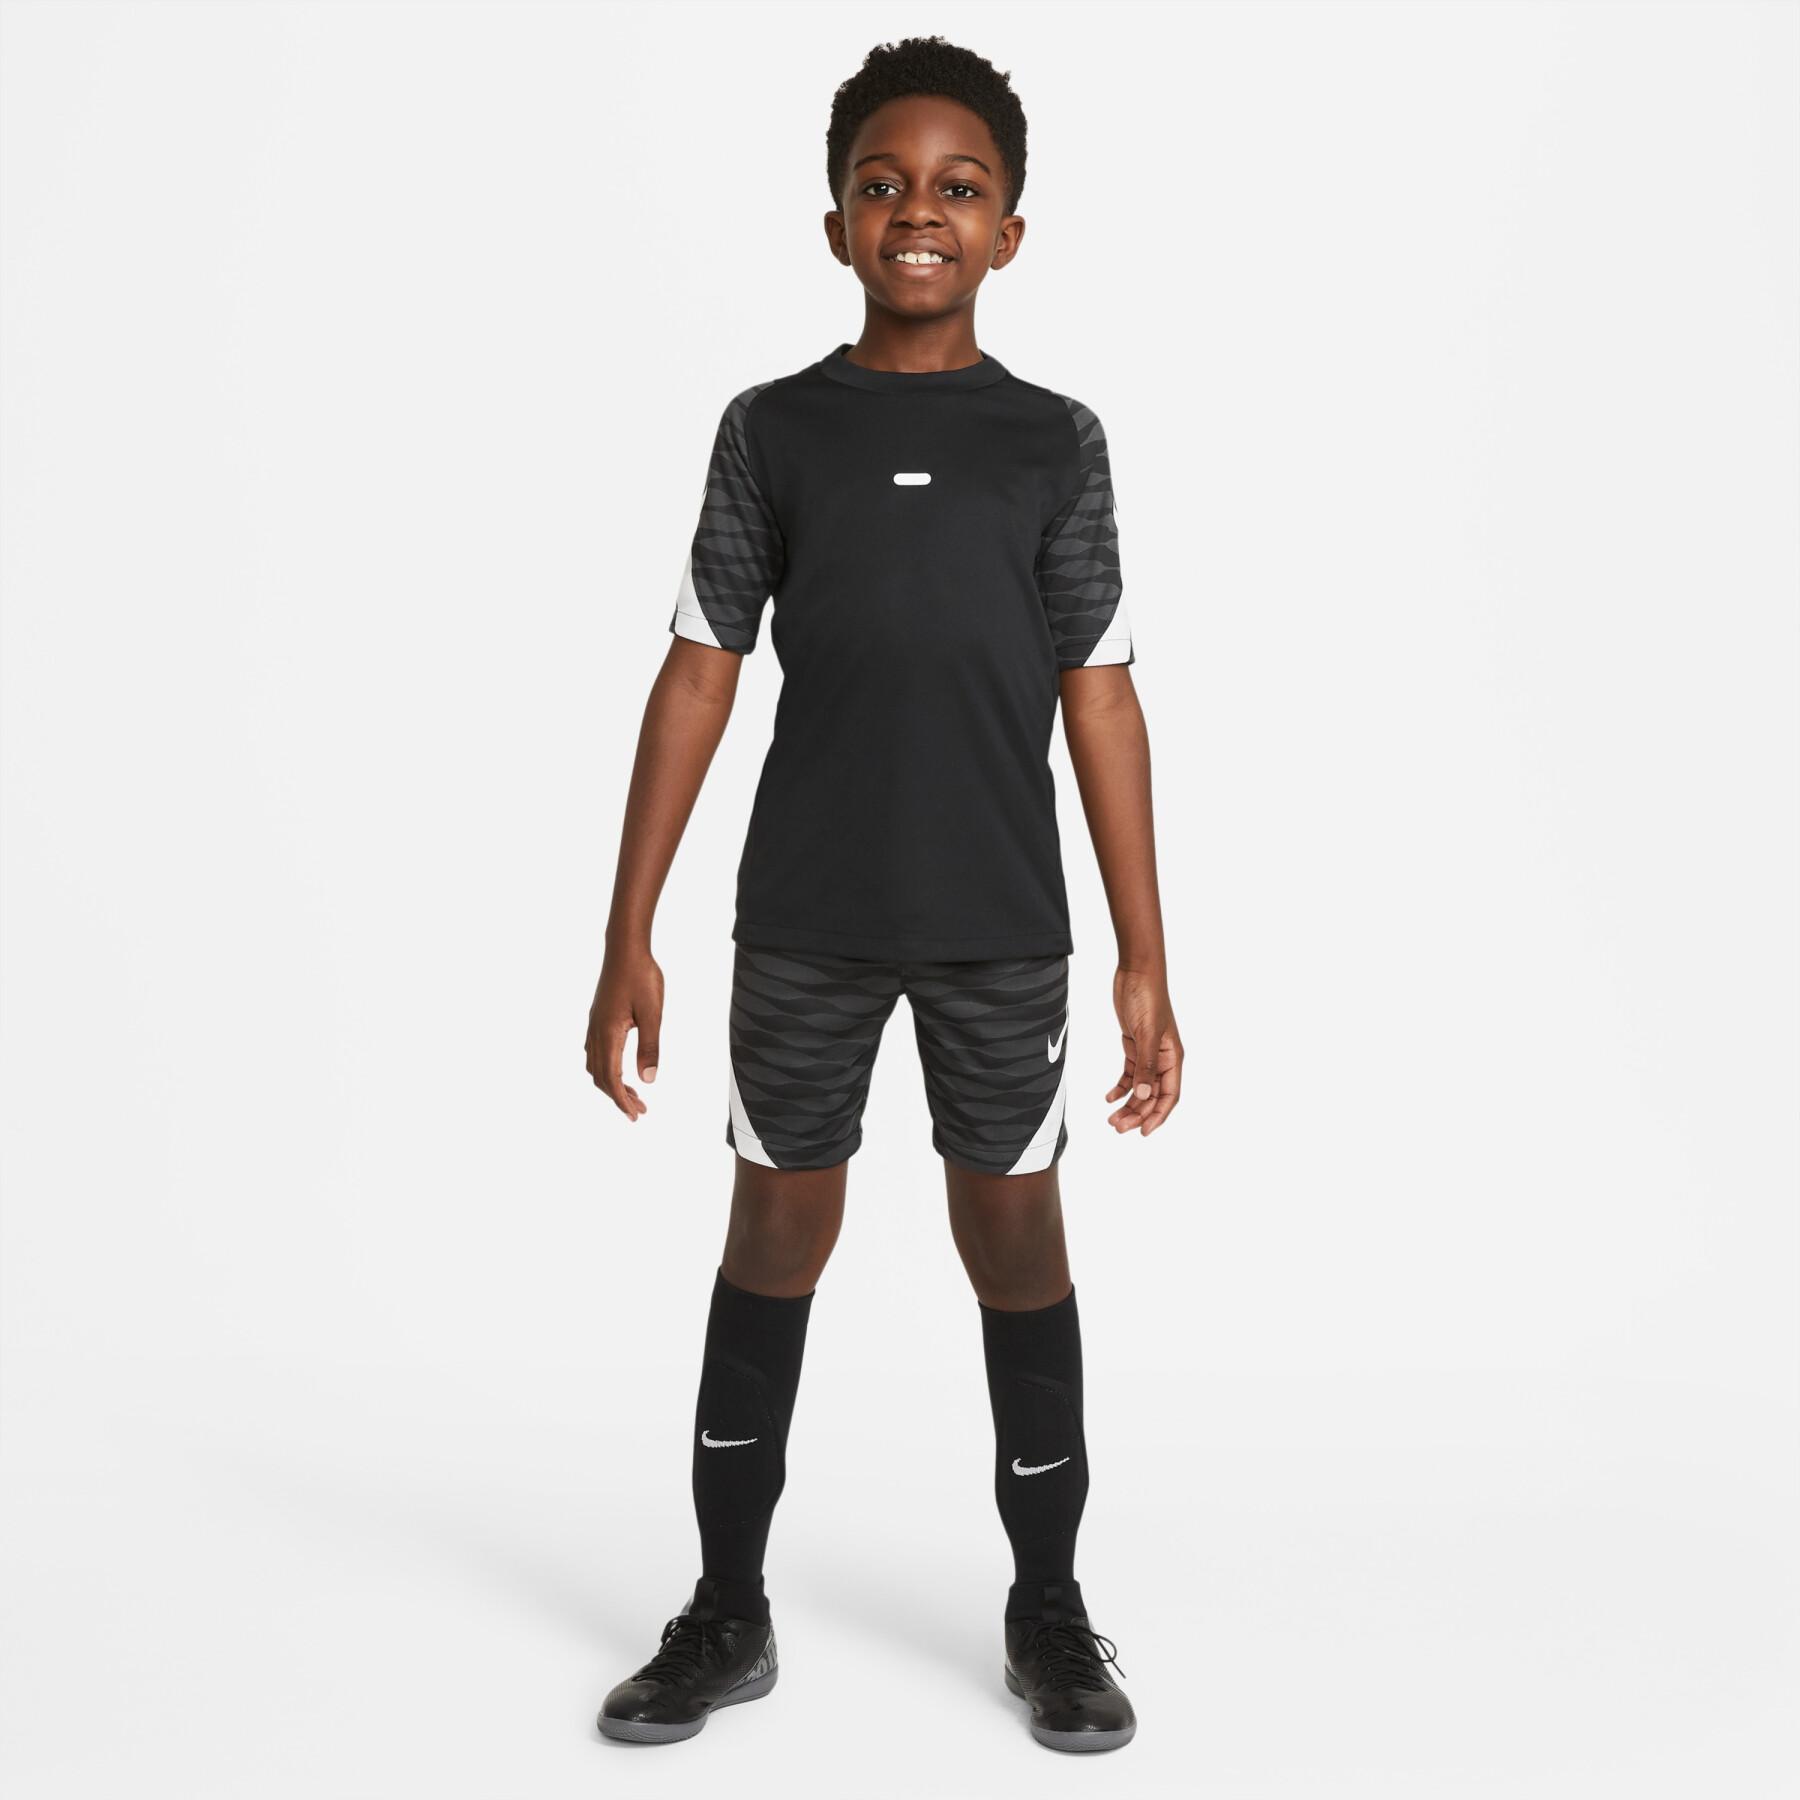 Pantalones cortos para niños Nike Dynamic Fit StrikeE21